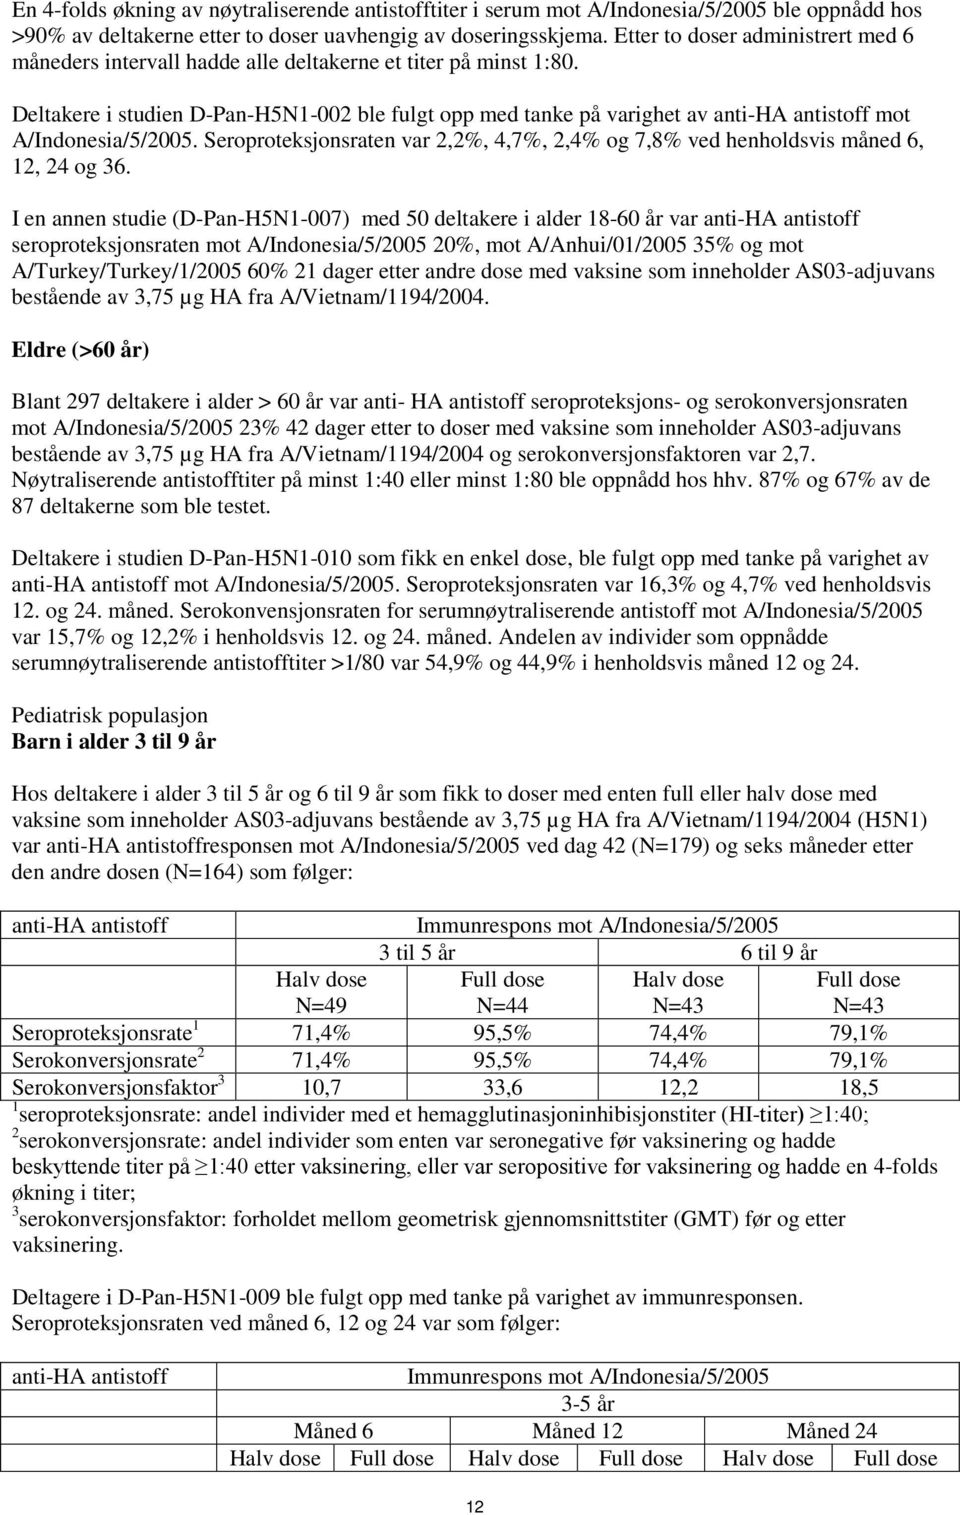 Deltakere i studien D-Pan-H5N1-002 ble fulgt opp med tanke på varighet av anti-ha antistoff mot A/Indonesia/5/2005.